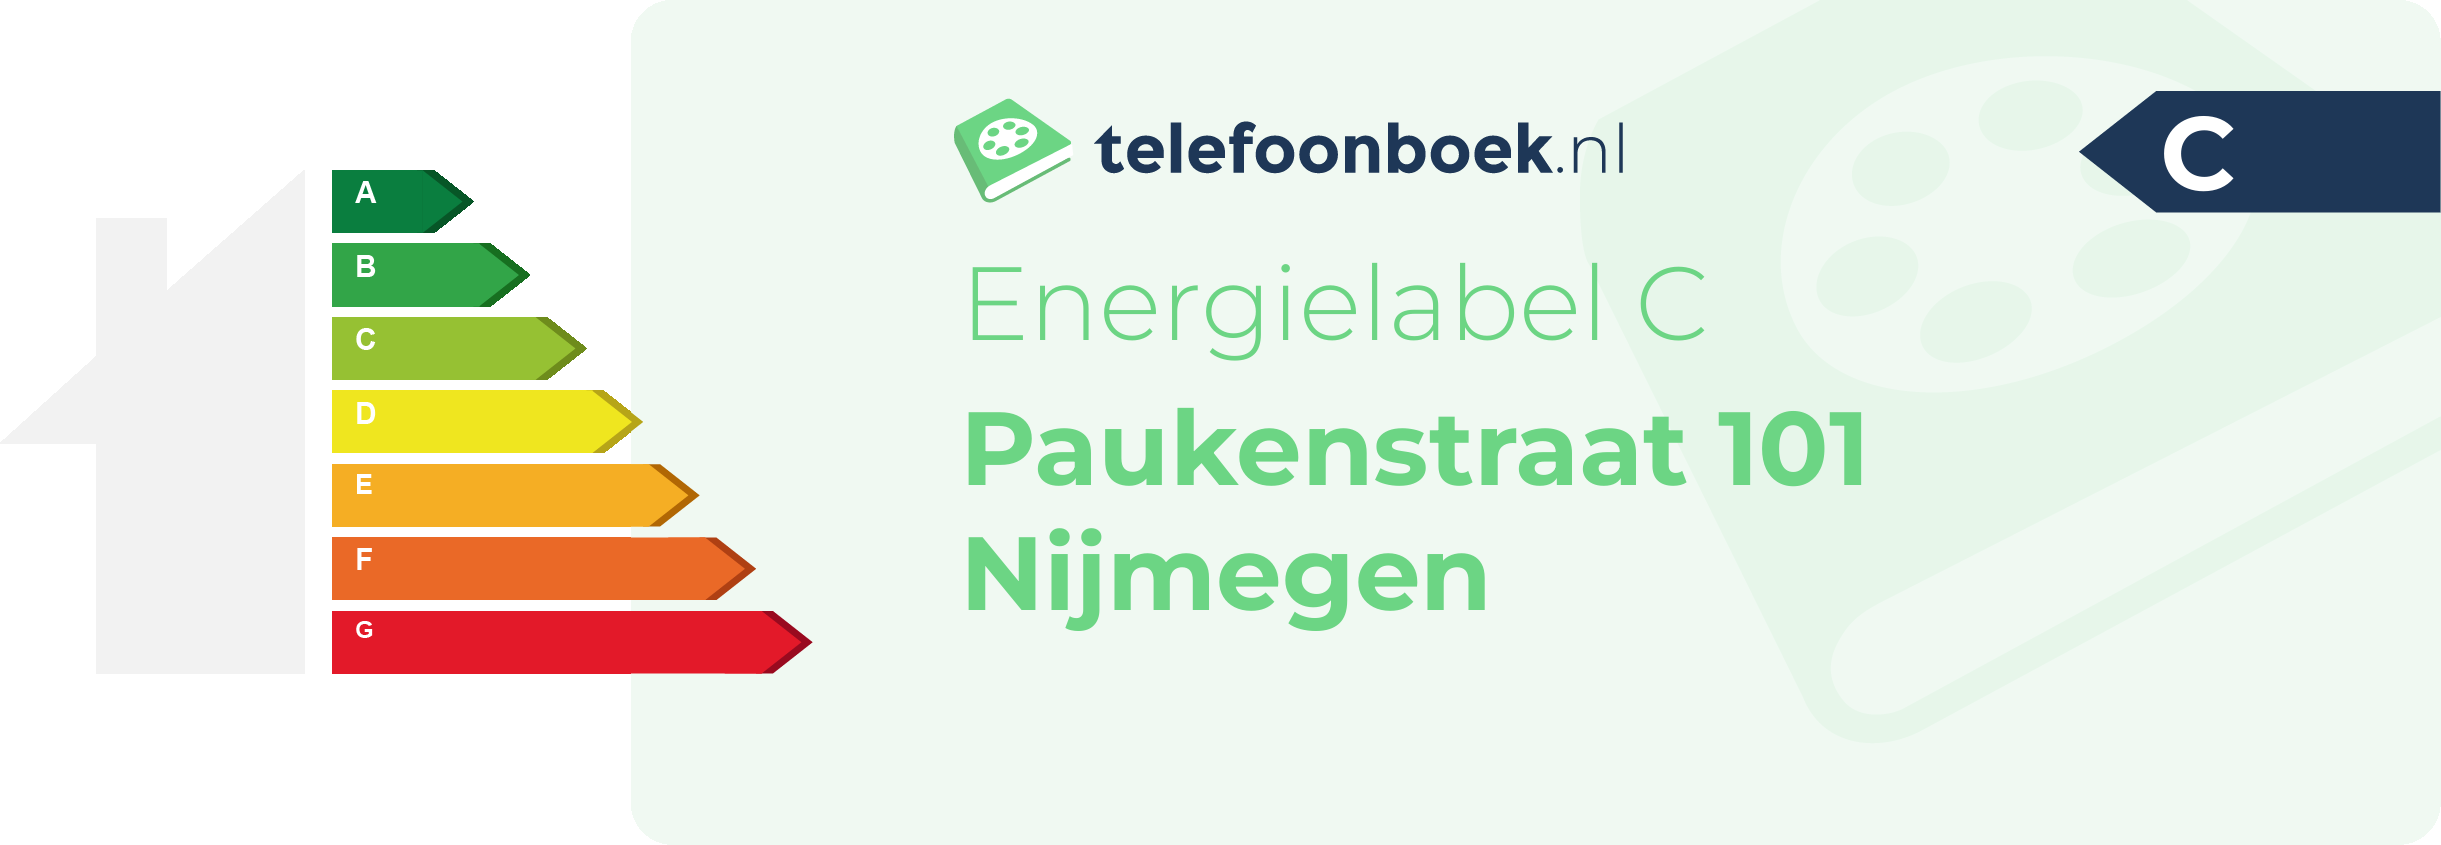 Energielabel Paukenstraat 101 Nijmegen